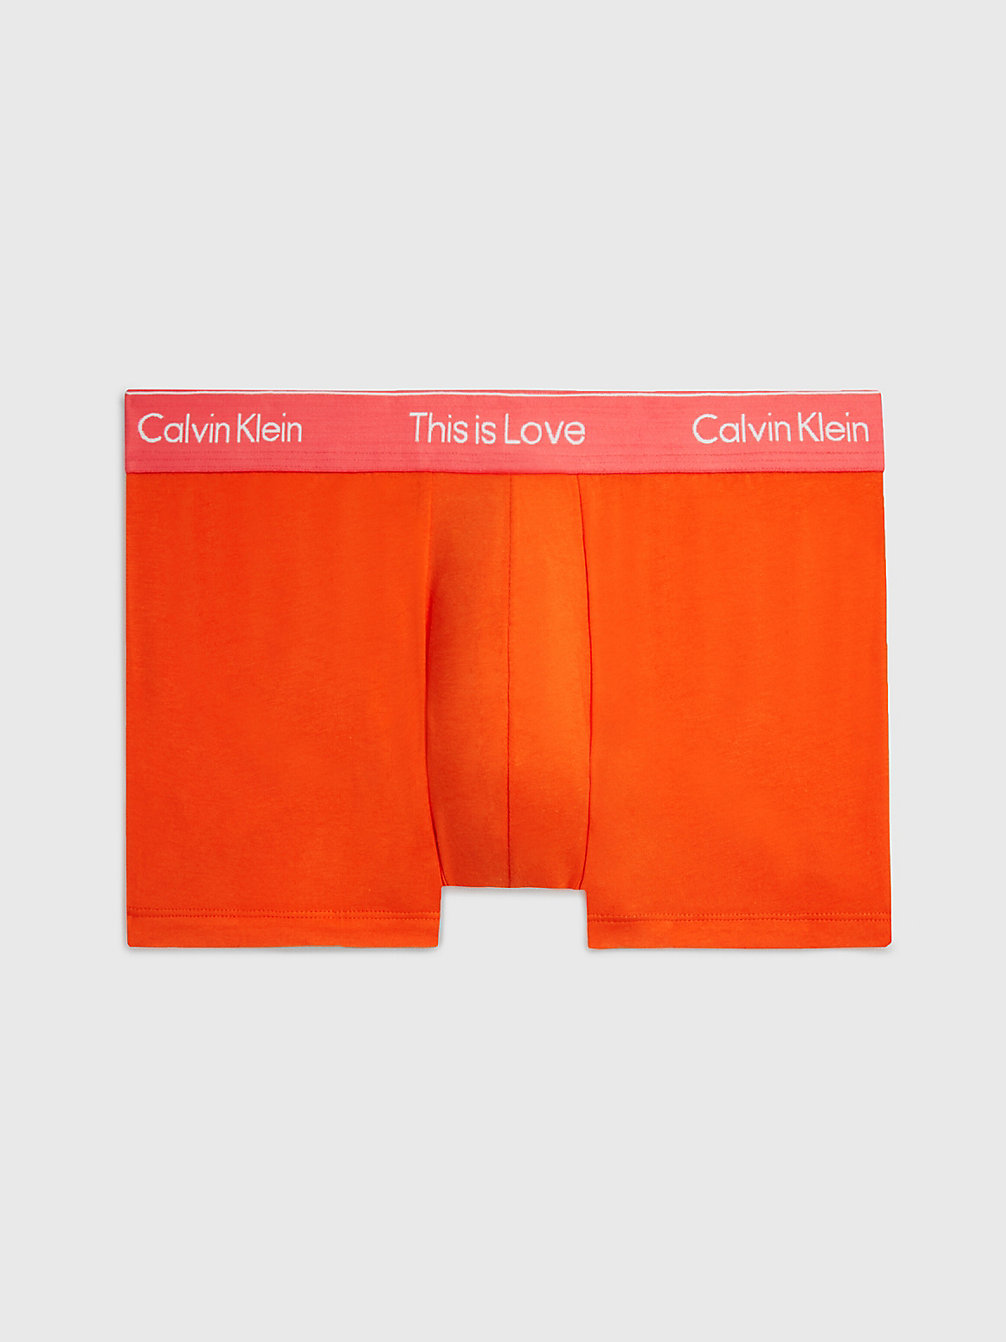 CHERRY TOMATO Shorts - Pride undefined Herren Calvin Klein